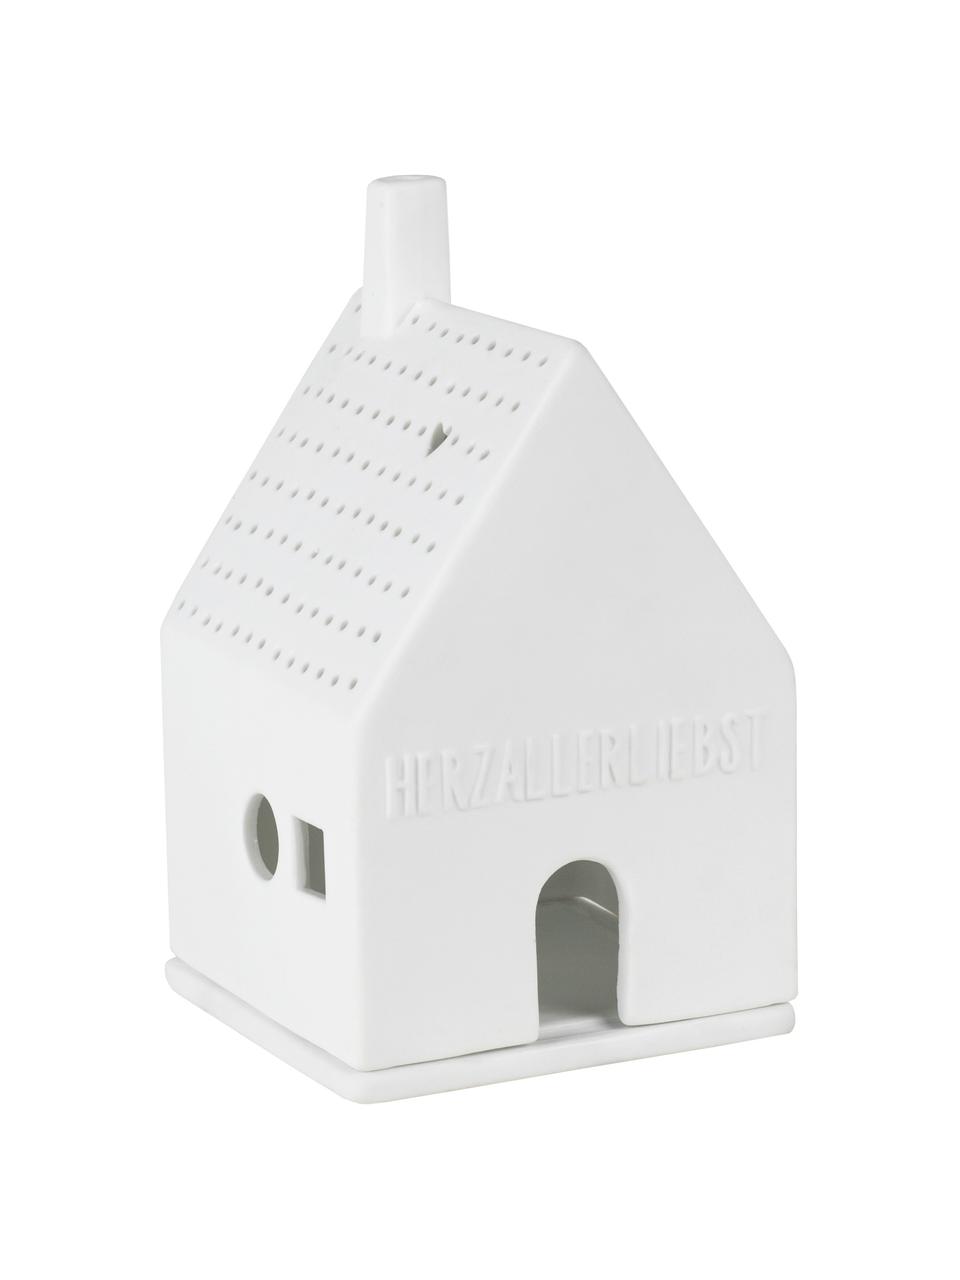 Porzellan-Lichthaus Living in Weiß, Porzellan, Weiß, B 7 x H 13 cm